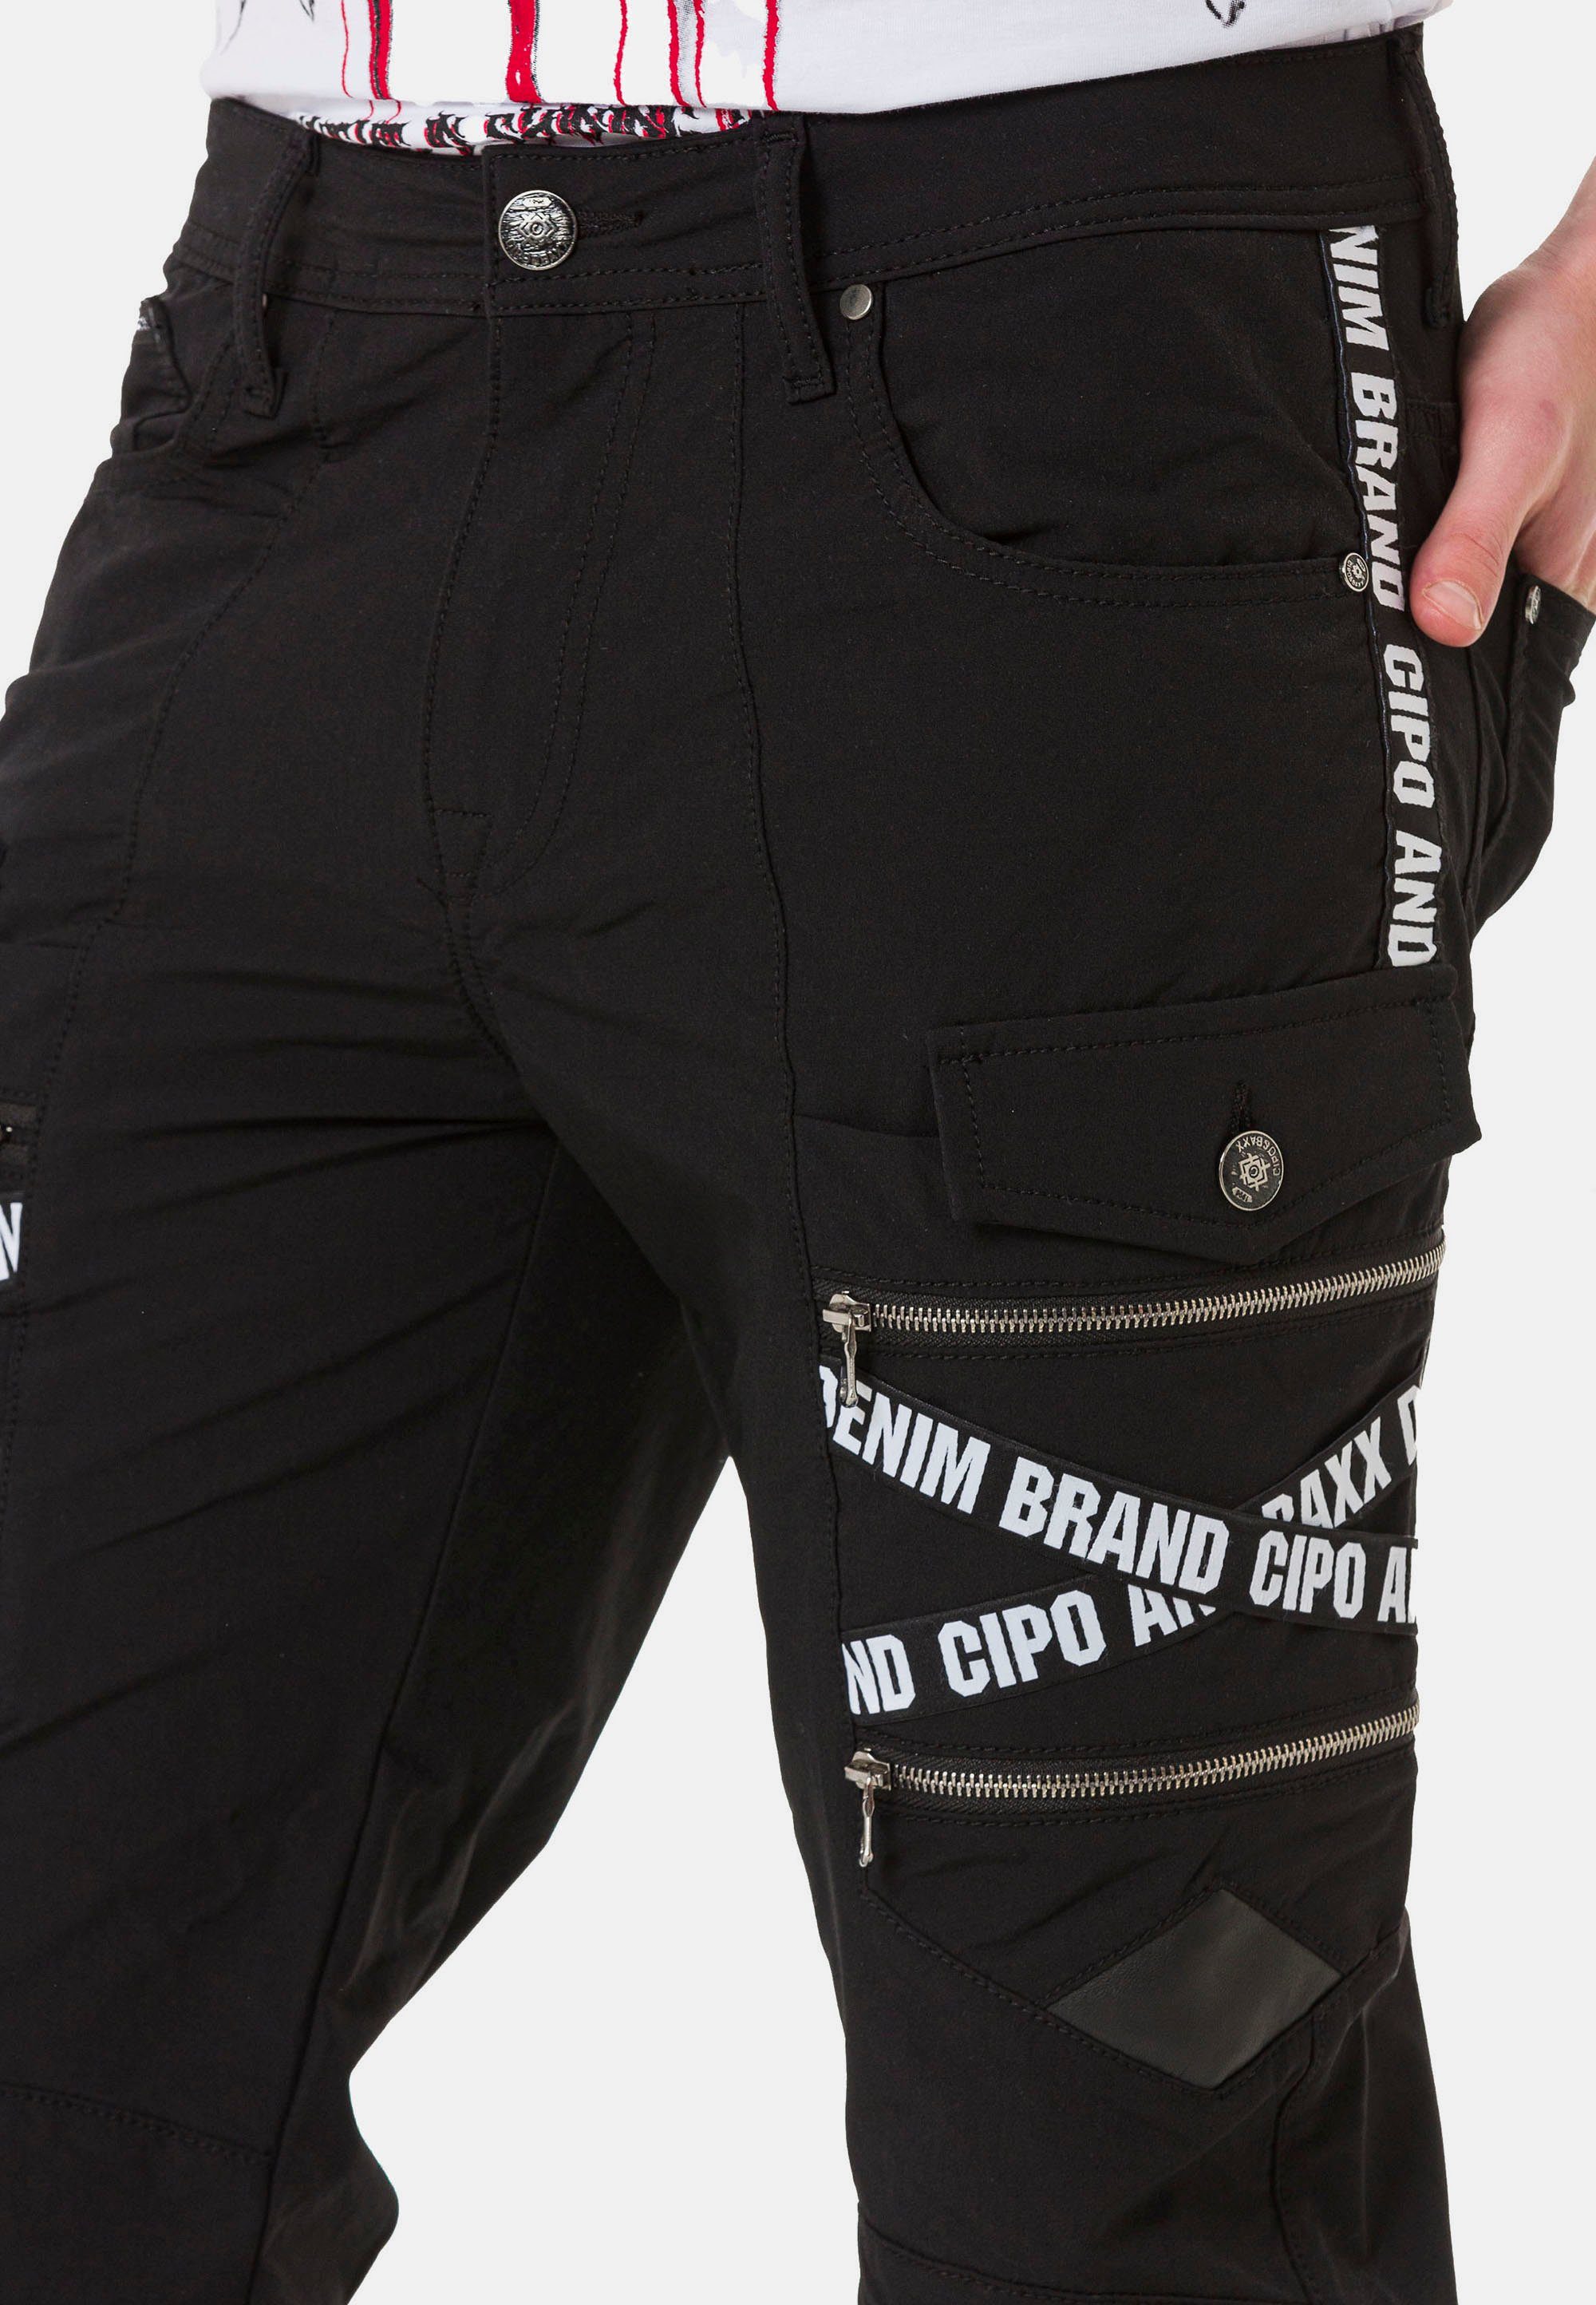 & Markenschriftzügen schwarz trendigen Baxx Cipo Cargohose mit